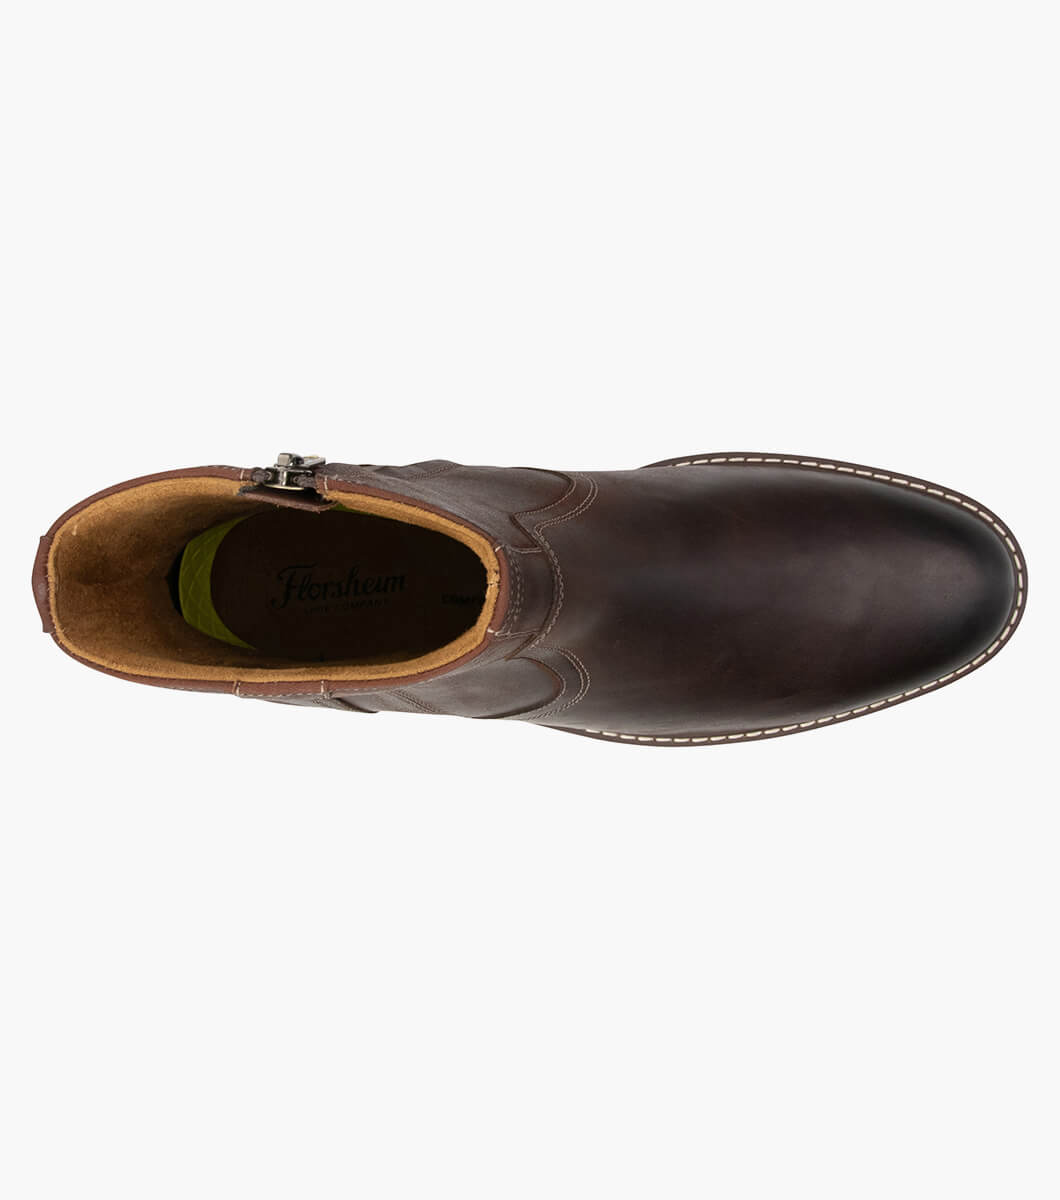 Norwalk Zip Plain Toe Side Zip Boot Men’s Comfortech Shoes | Florsheim.com